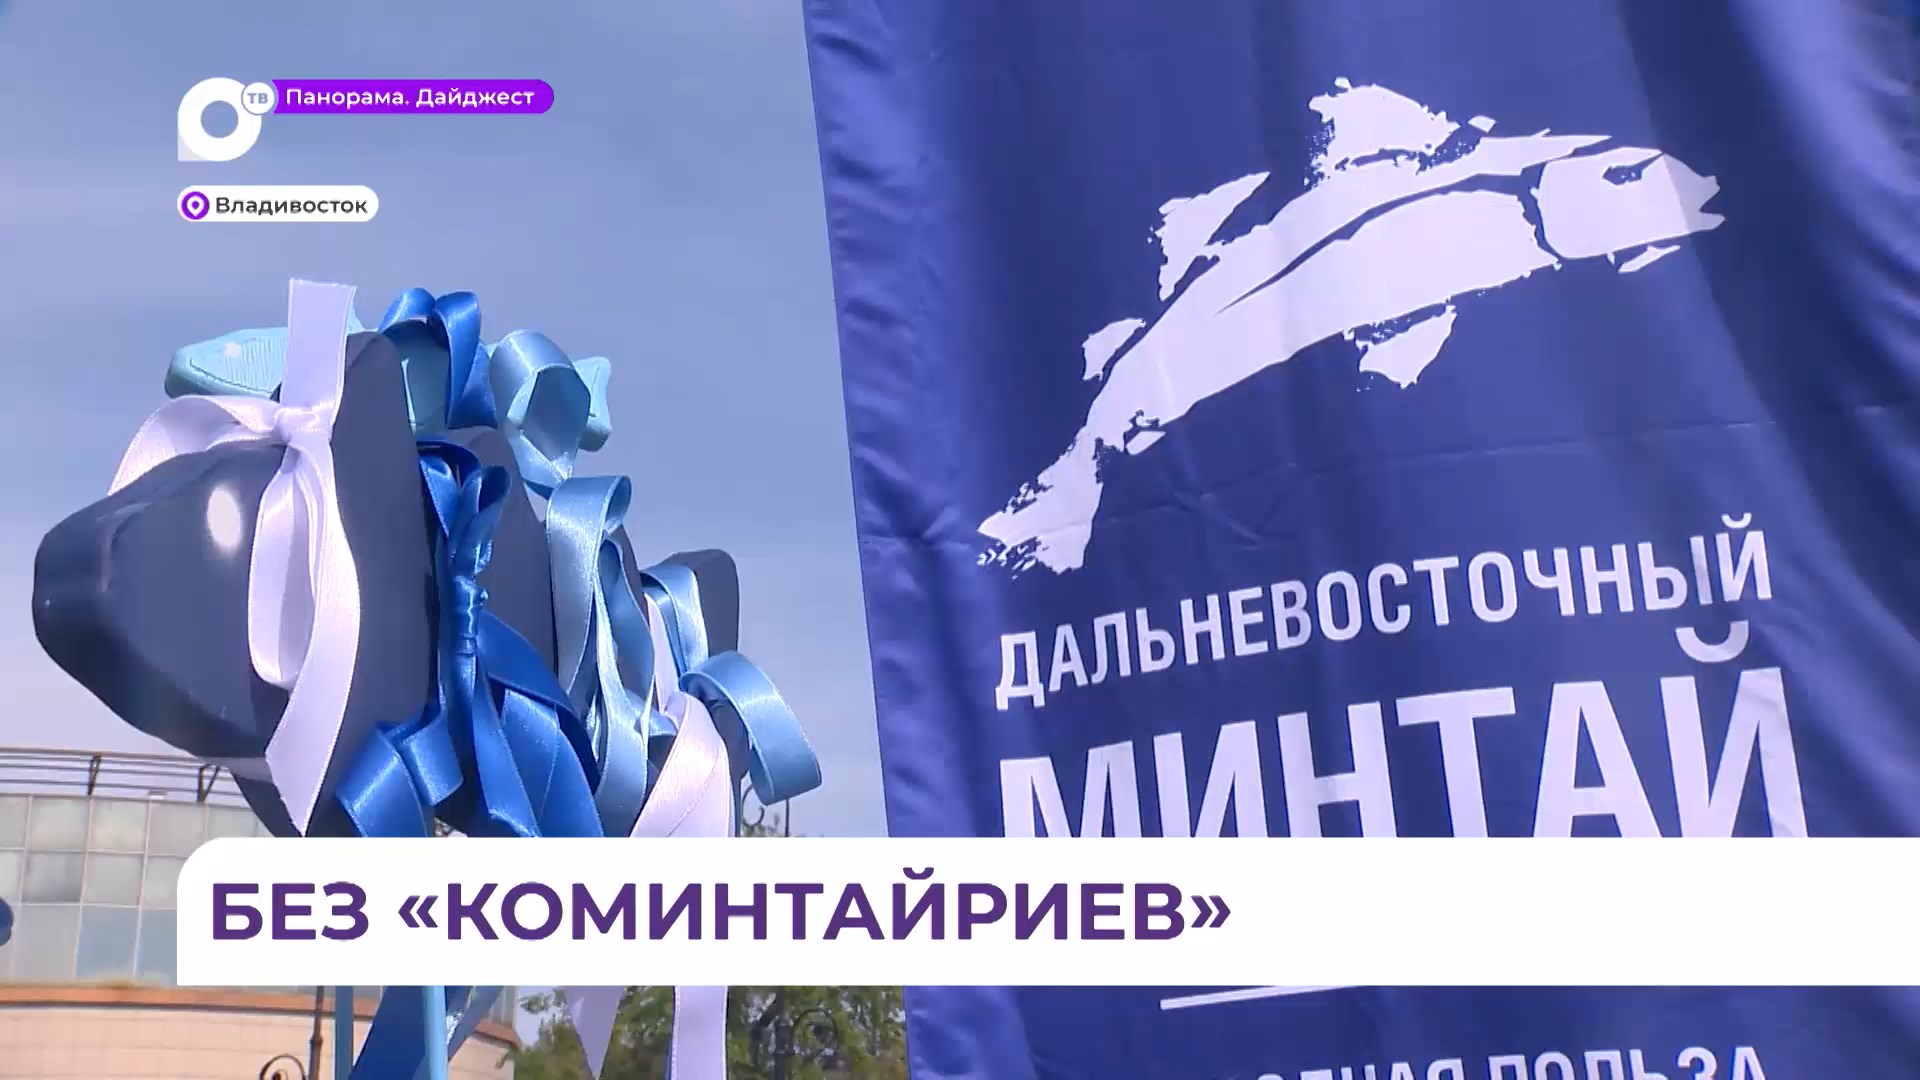 Уличный праздник минтая «О! Мега вкус» состоялся во Владивостоке